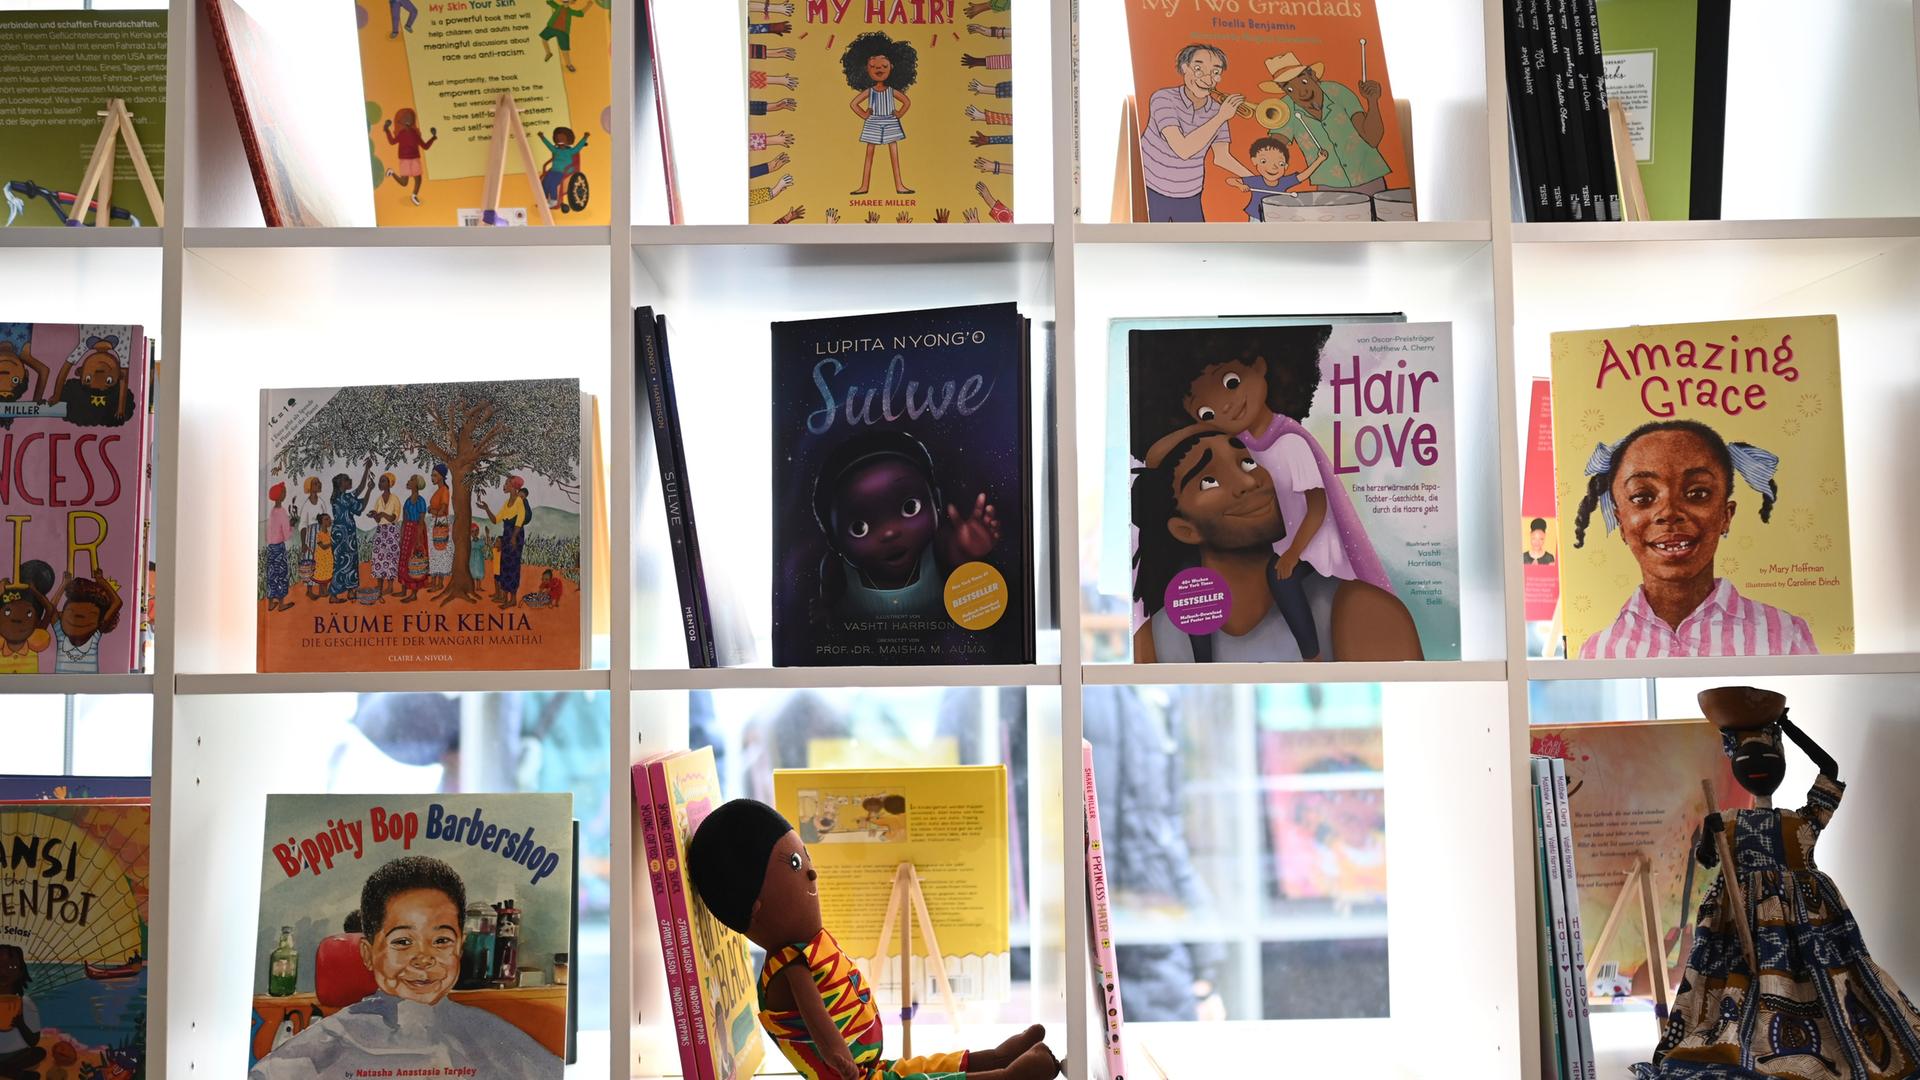 Ein Blick aufs Bücherregal der neuen "Schwarzen Kinderbibliothek" in Bremen. Eine Kinder- und Jugendbibliothek, die ausschließlich Literatur über das Leben schwarzer Menschen anbietet. 